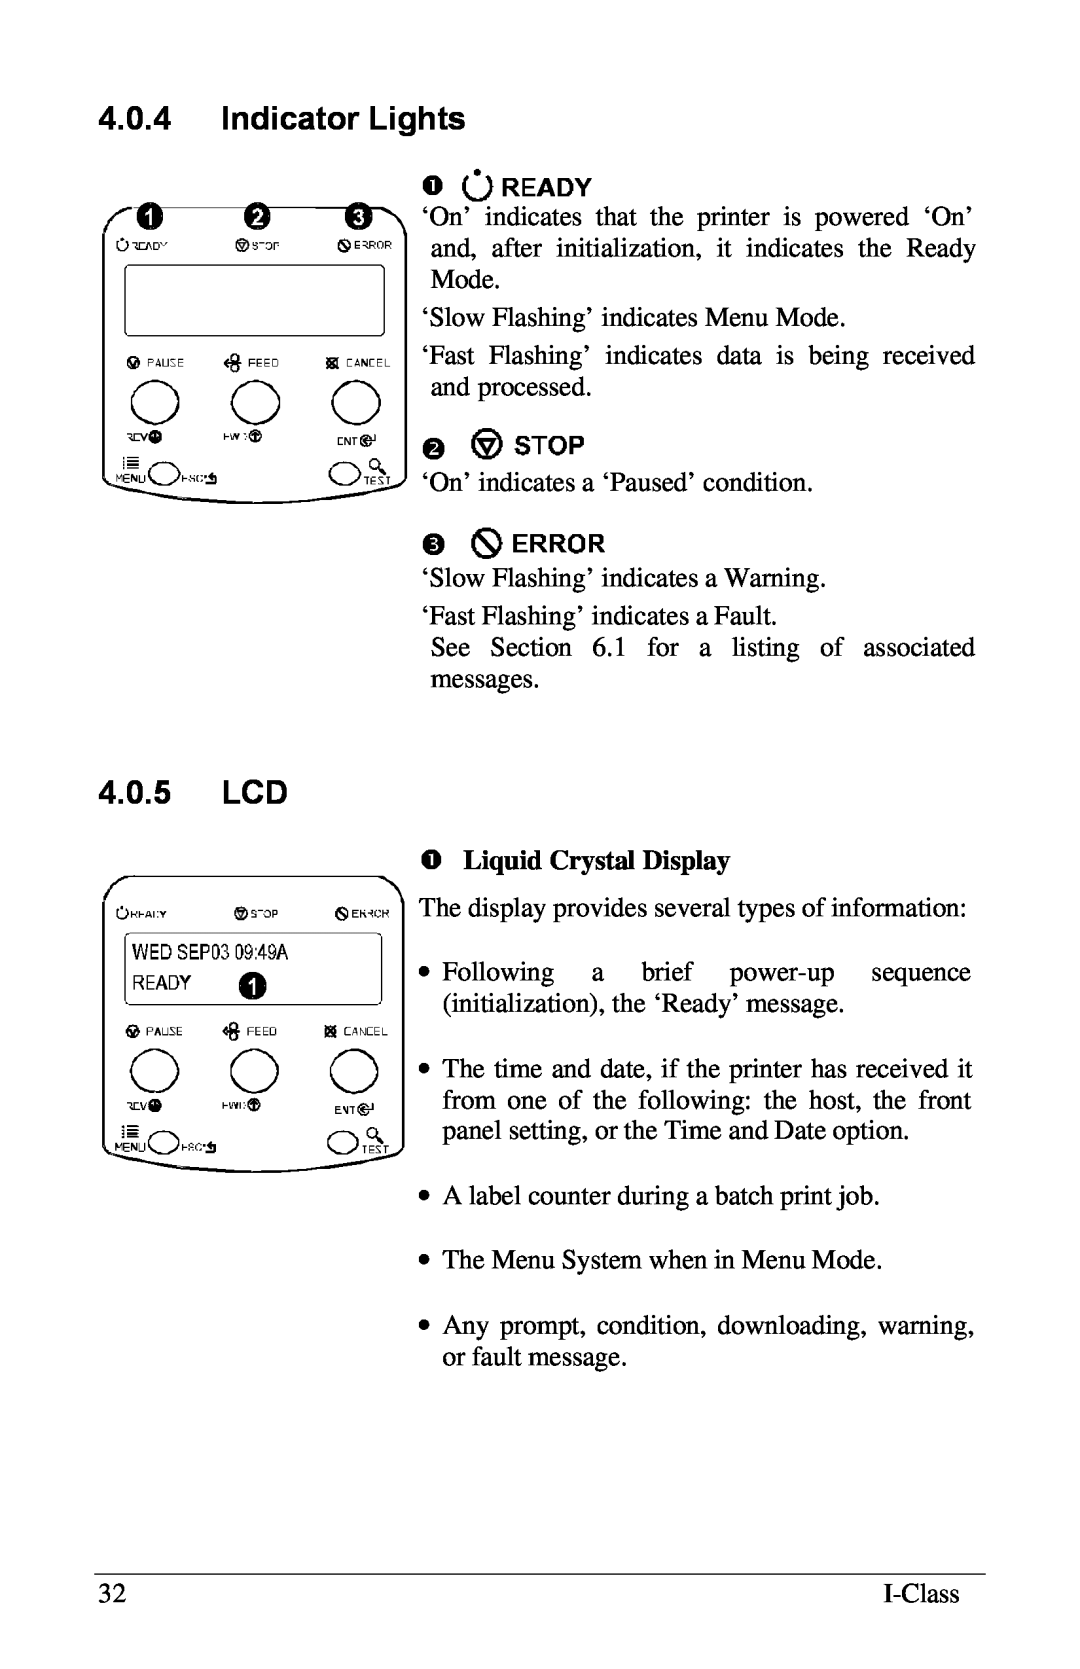 Xerox I Class manual 4.0.4Indicator Lights, 4.0.5LCD, ŒLiquid Crystal Display 